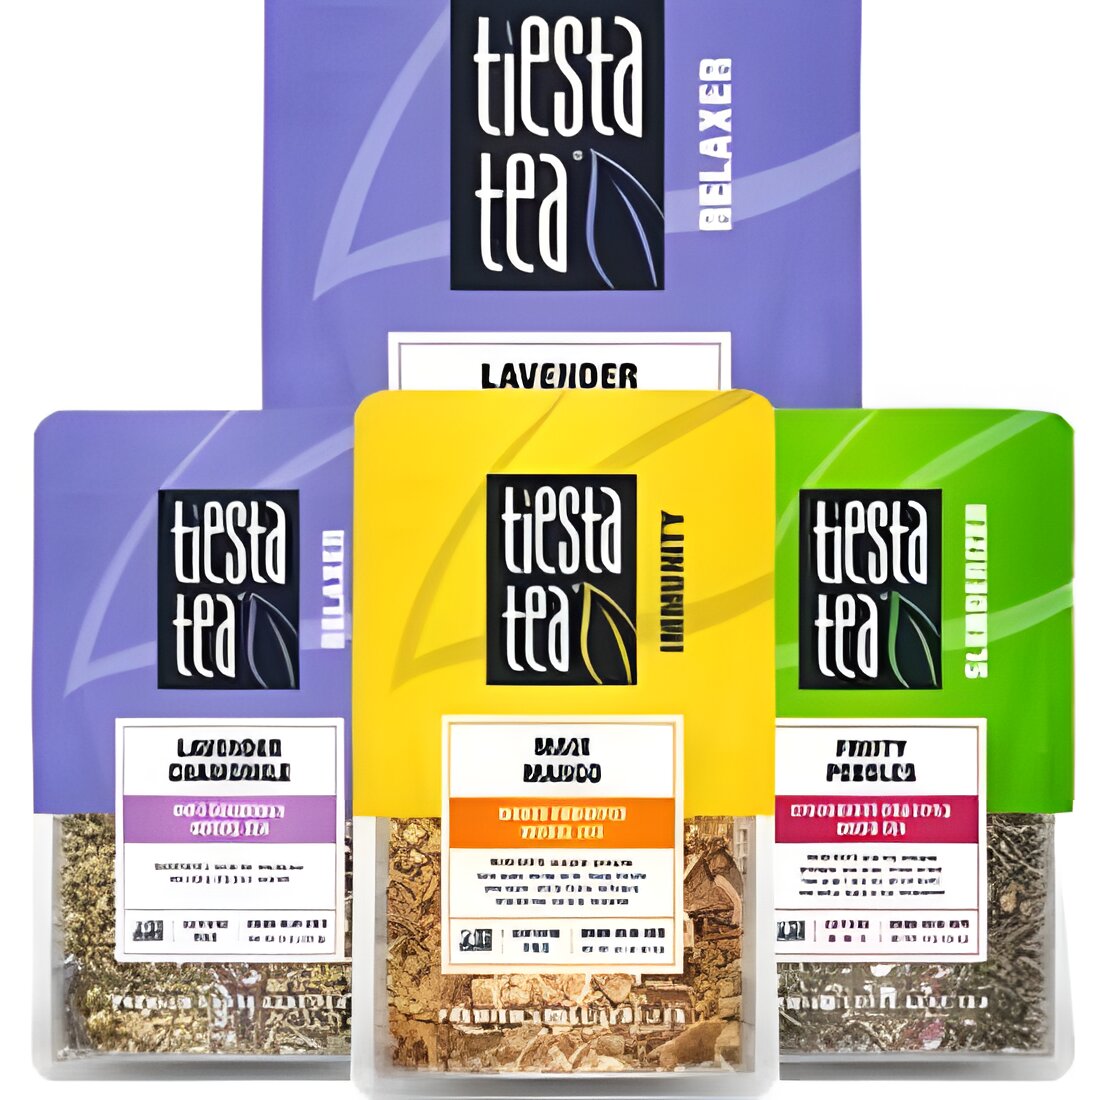 Free Tiesta Tea Loose Leaf Tea